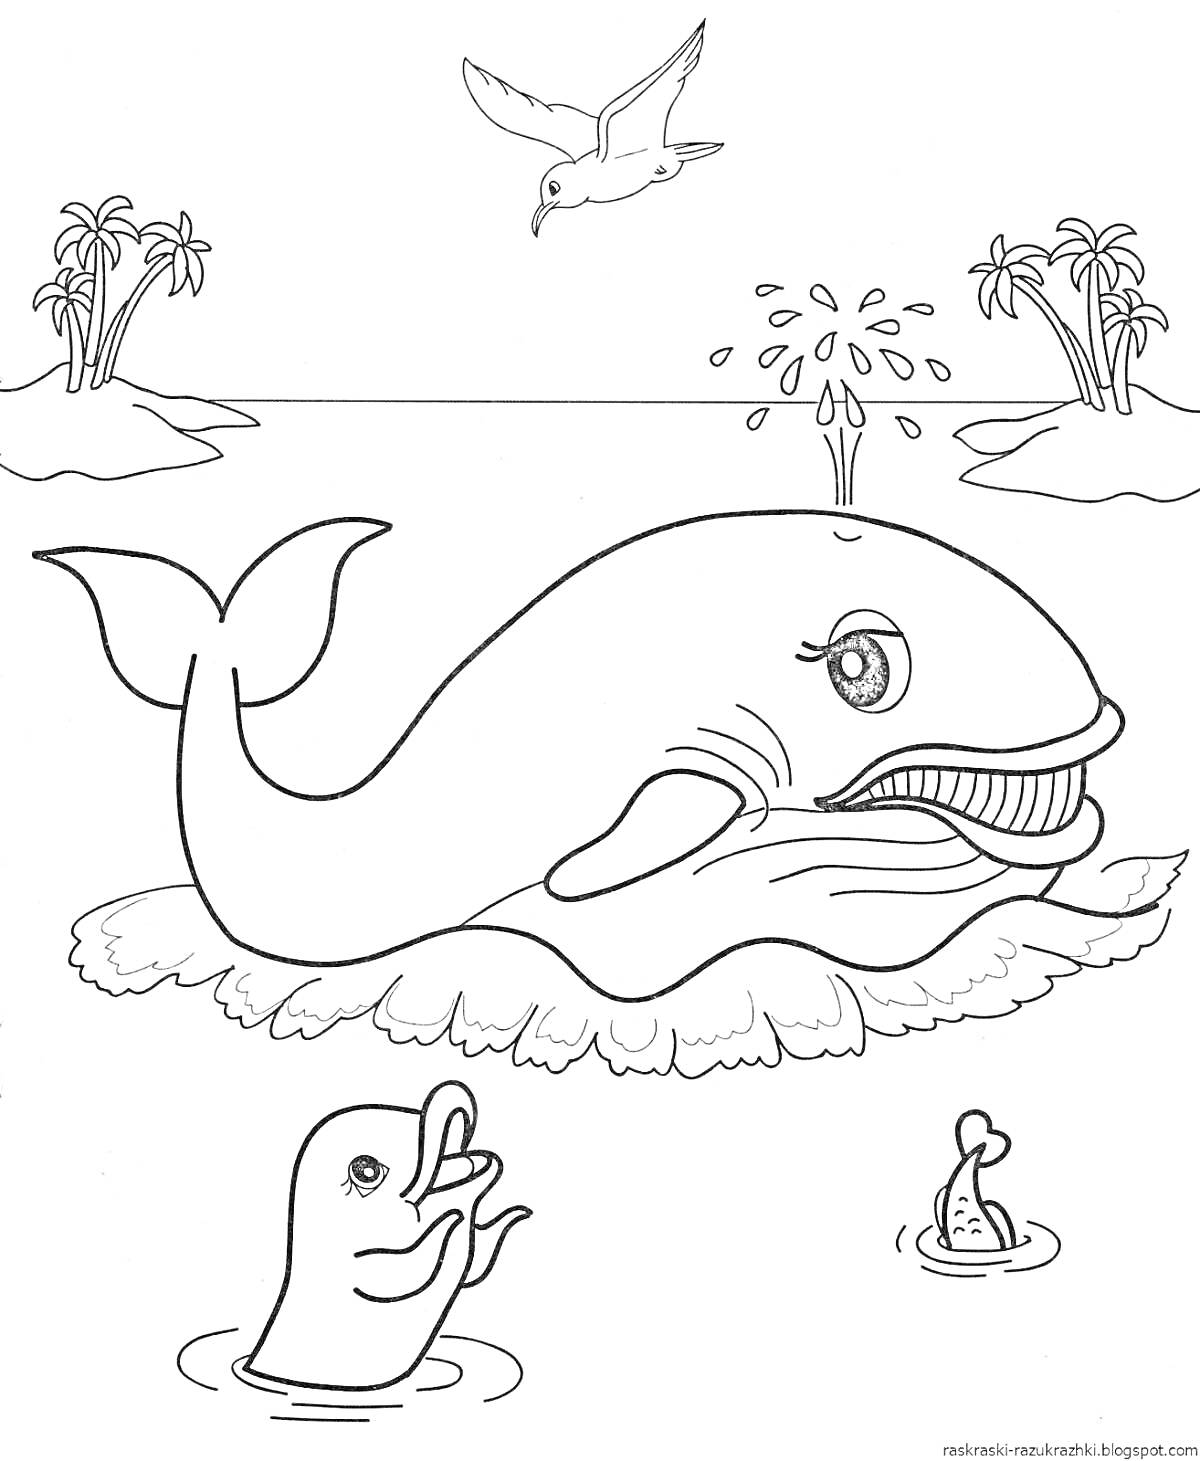 РаскраскаКит с фонтаном воды, птица, дельфин и рыба в море с островами и пальмами